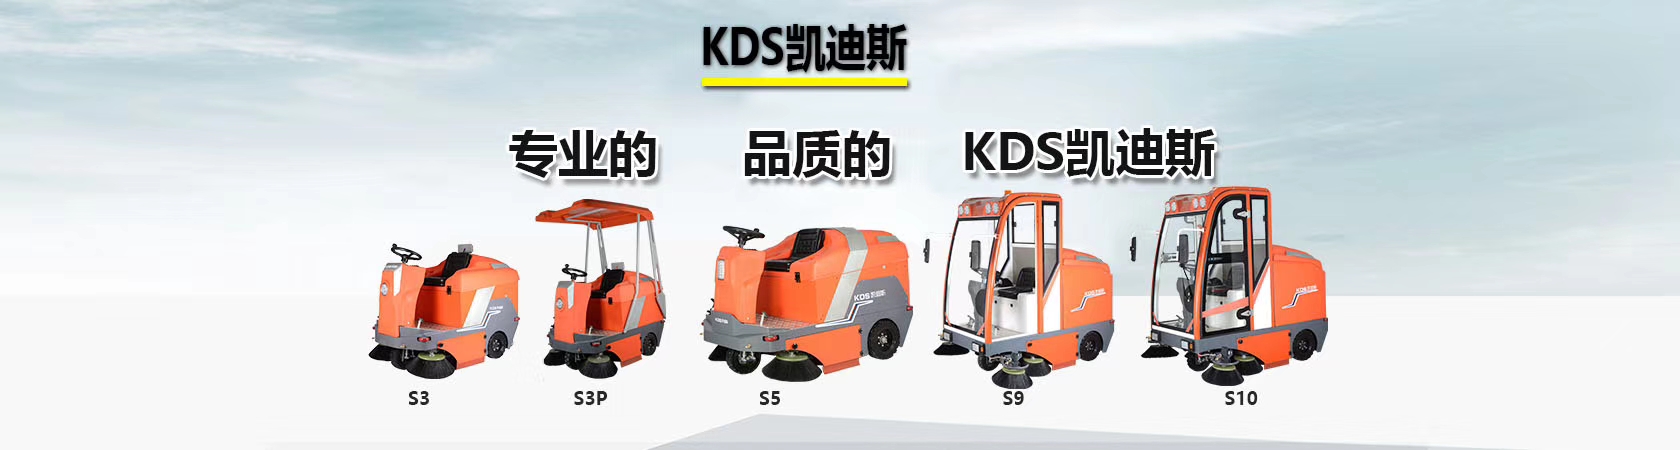 嘉兴机械厂油污灰尘洗地机KL520 超市商场物业保洁洗地机批发示例图20